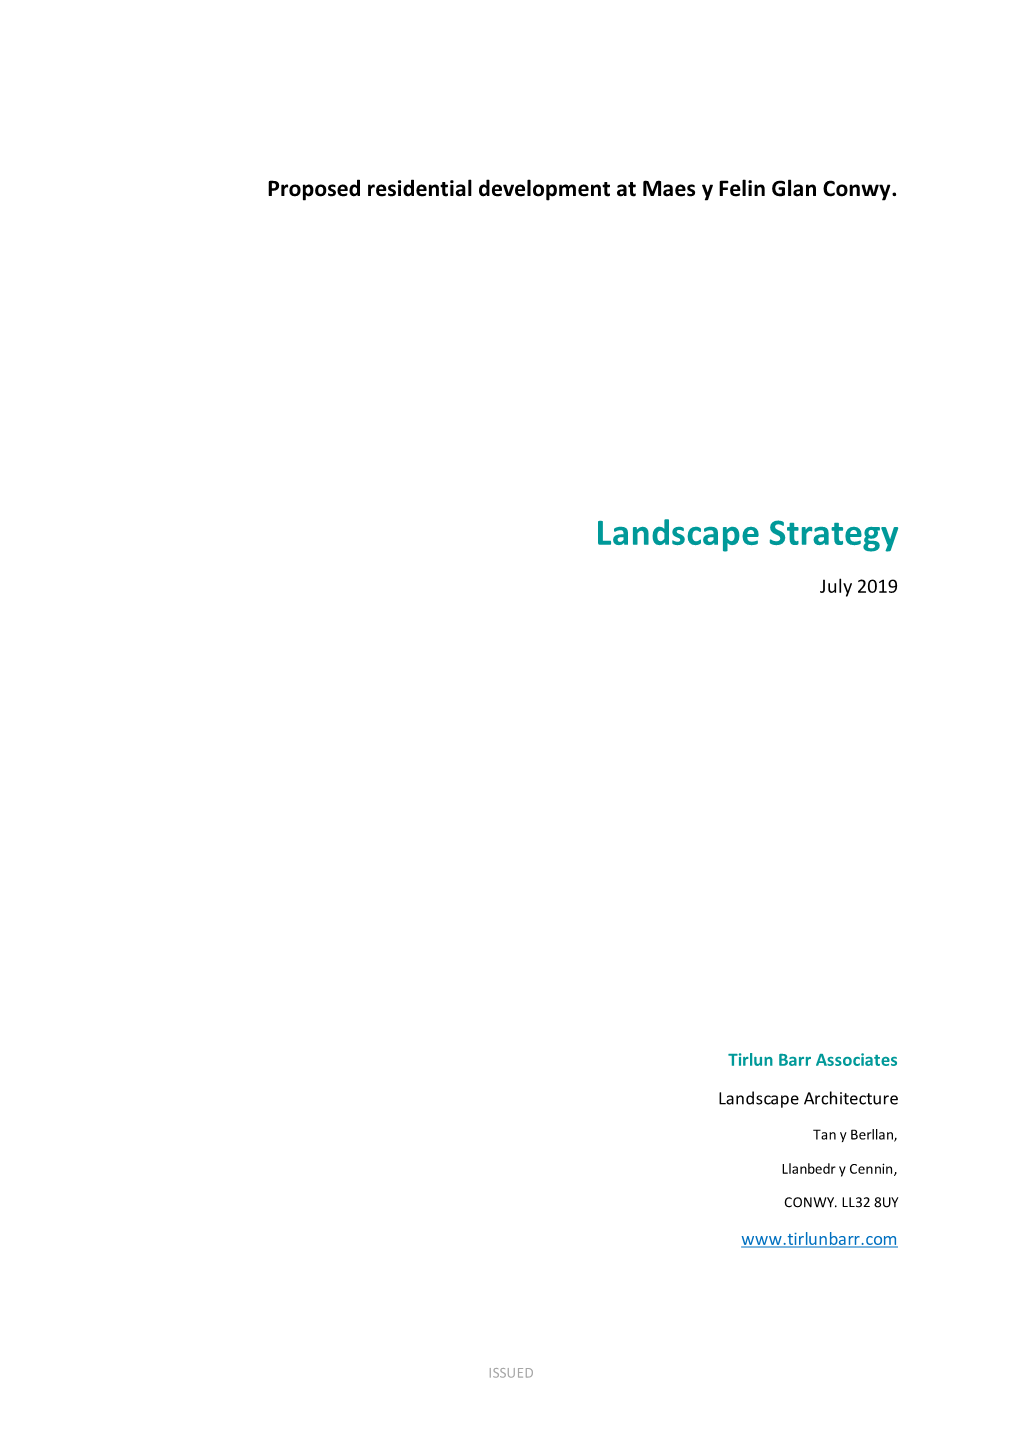 Landscape Strategy July 2019